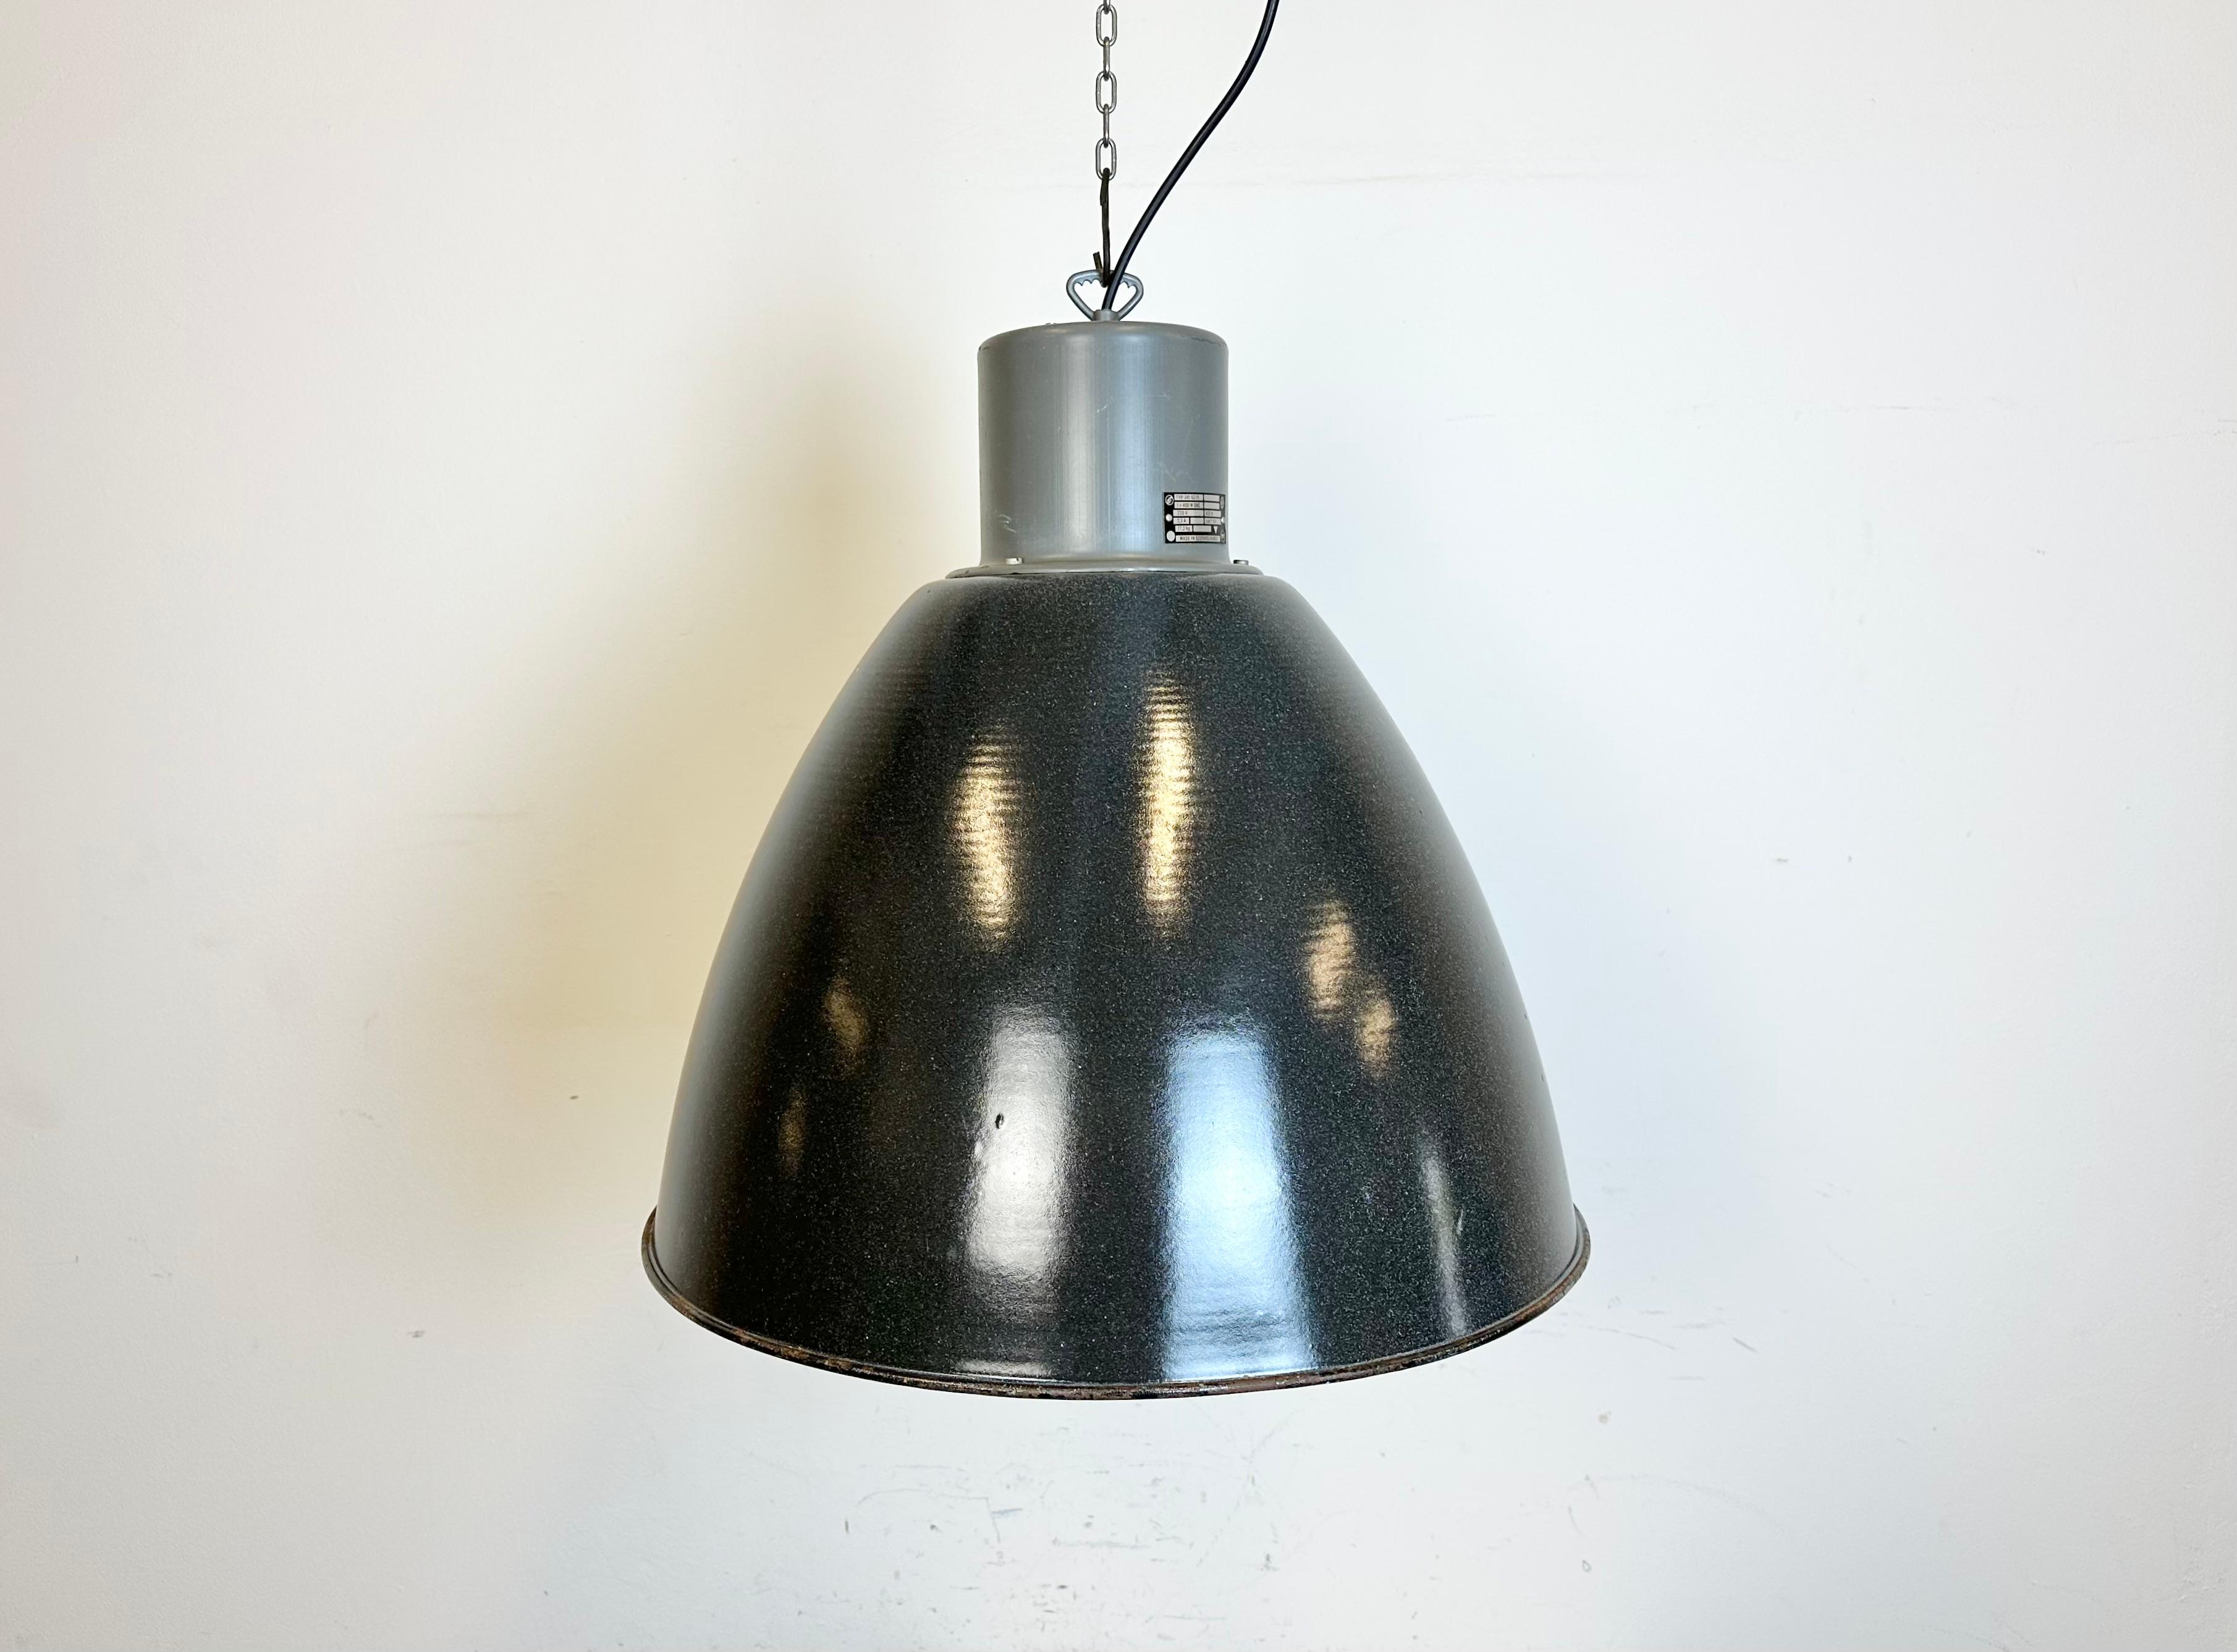 Diese graue Industrie-Pendelleuchte wurde in den 1960er Jahren entworfen und von Elektrosvit in der ehemaligen Tschechoslowakei hergestellt. Der Schirm ist dunkelgrau emailliert, die Innenseite weiß emailliert und der Deckel aus Eisen mit Haken.